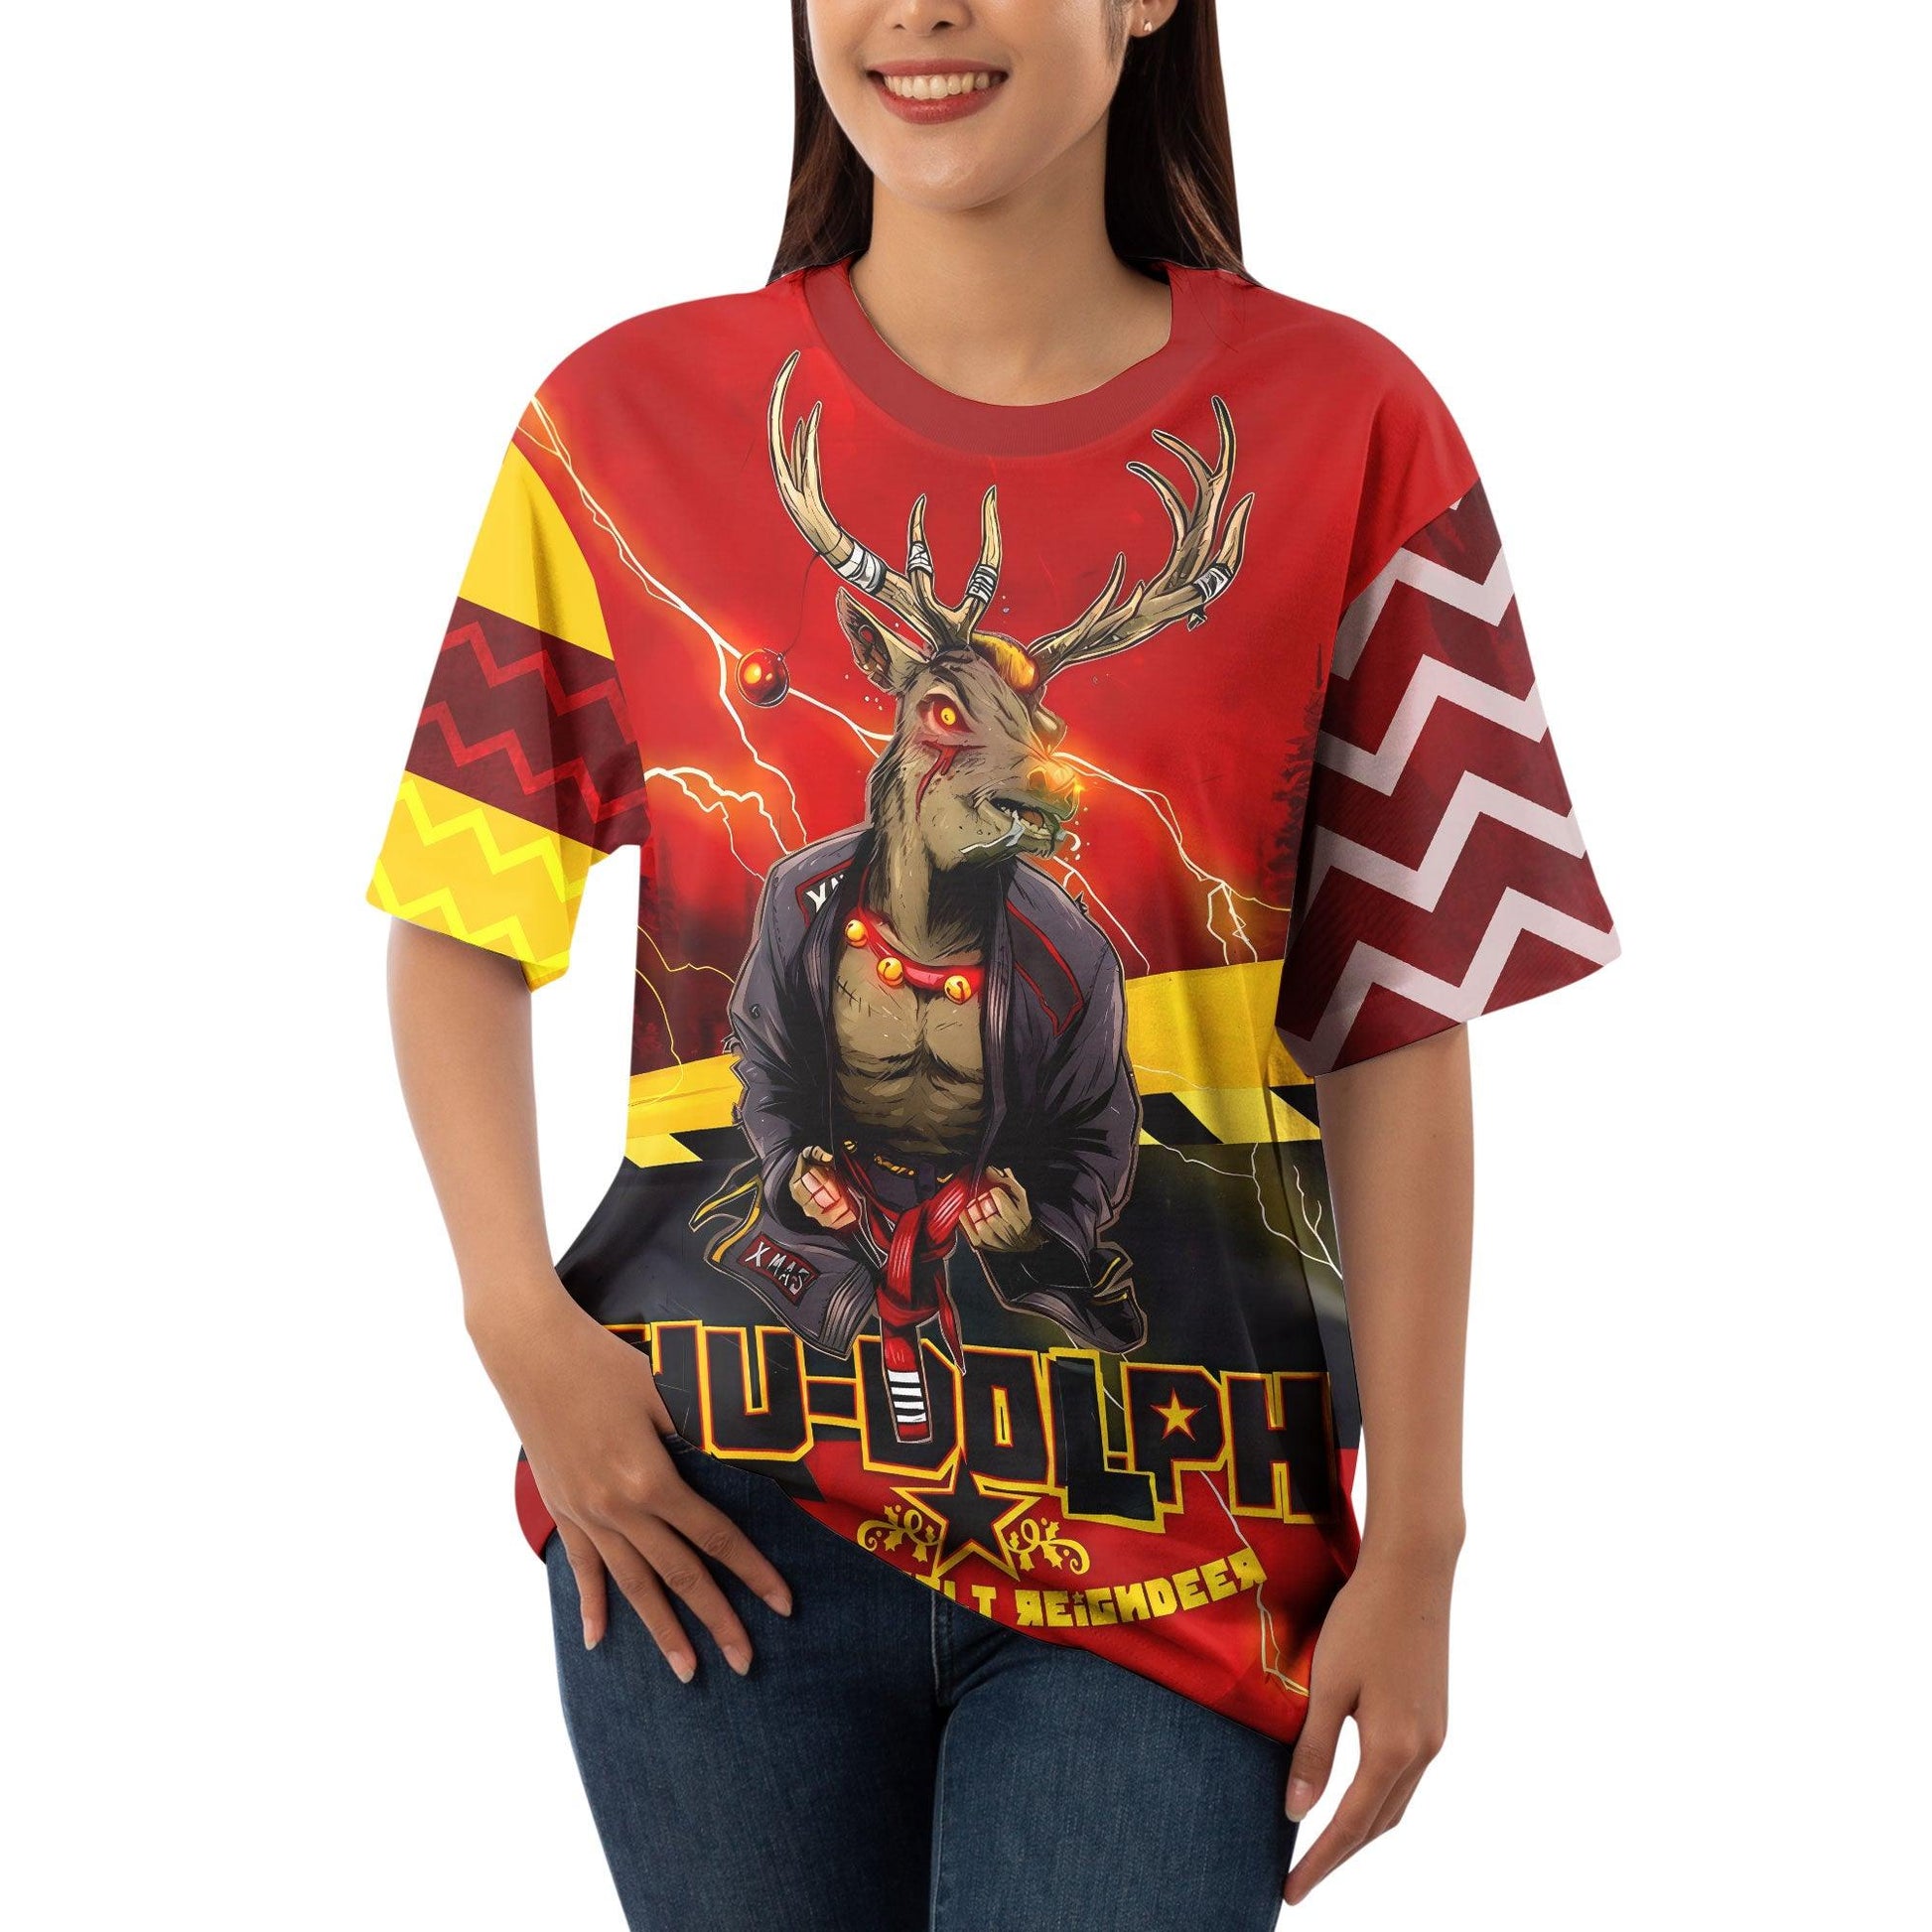 Hudolph The Red Belt Reindeer T-shirt